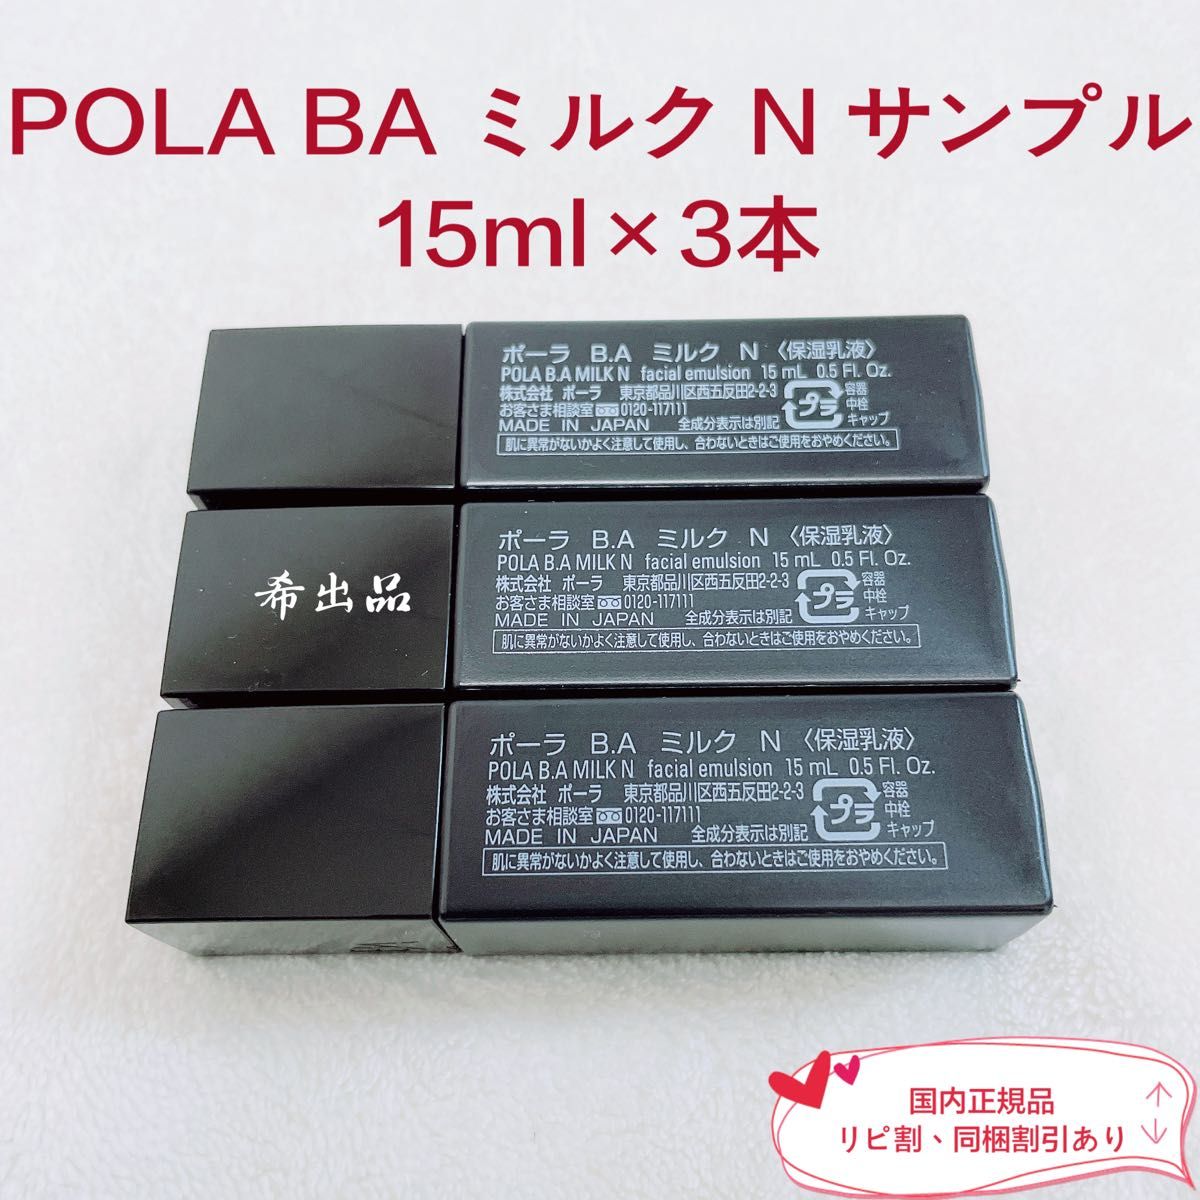 POLA B.A ミルクN 15ml - 基礎化粧品